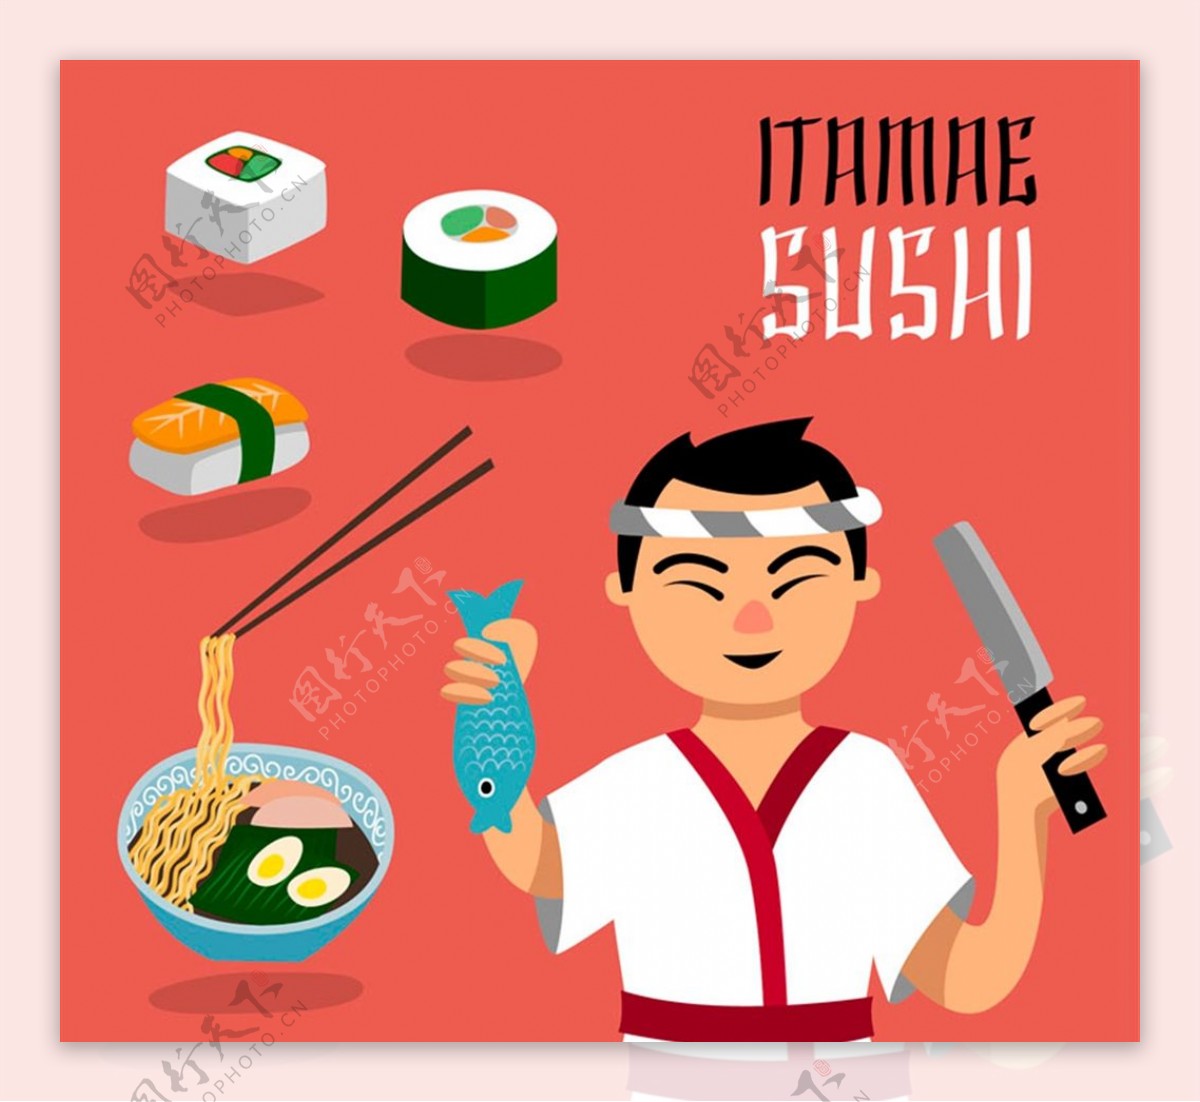 日本厨师和料理图片